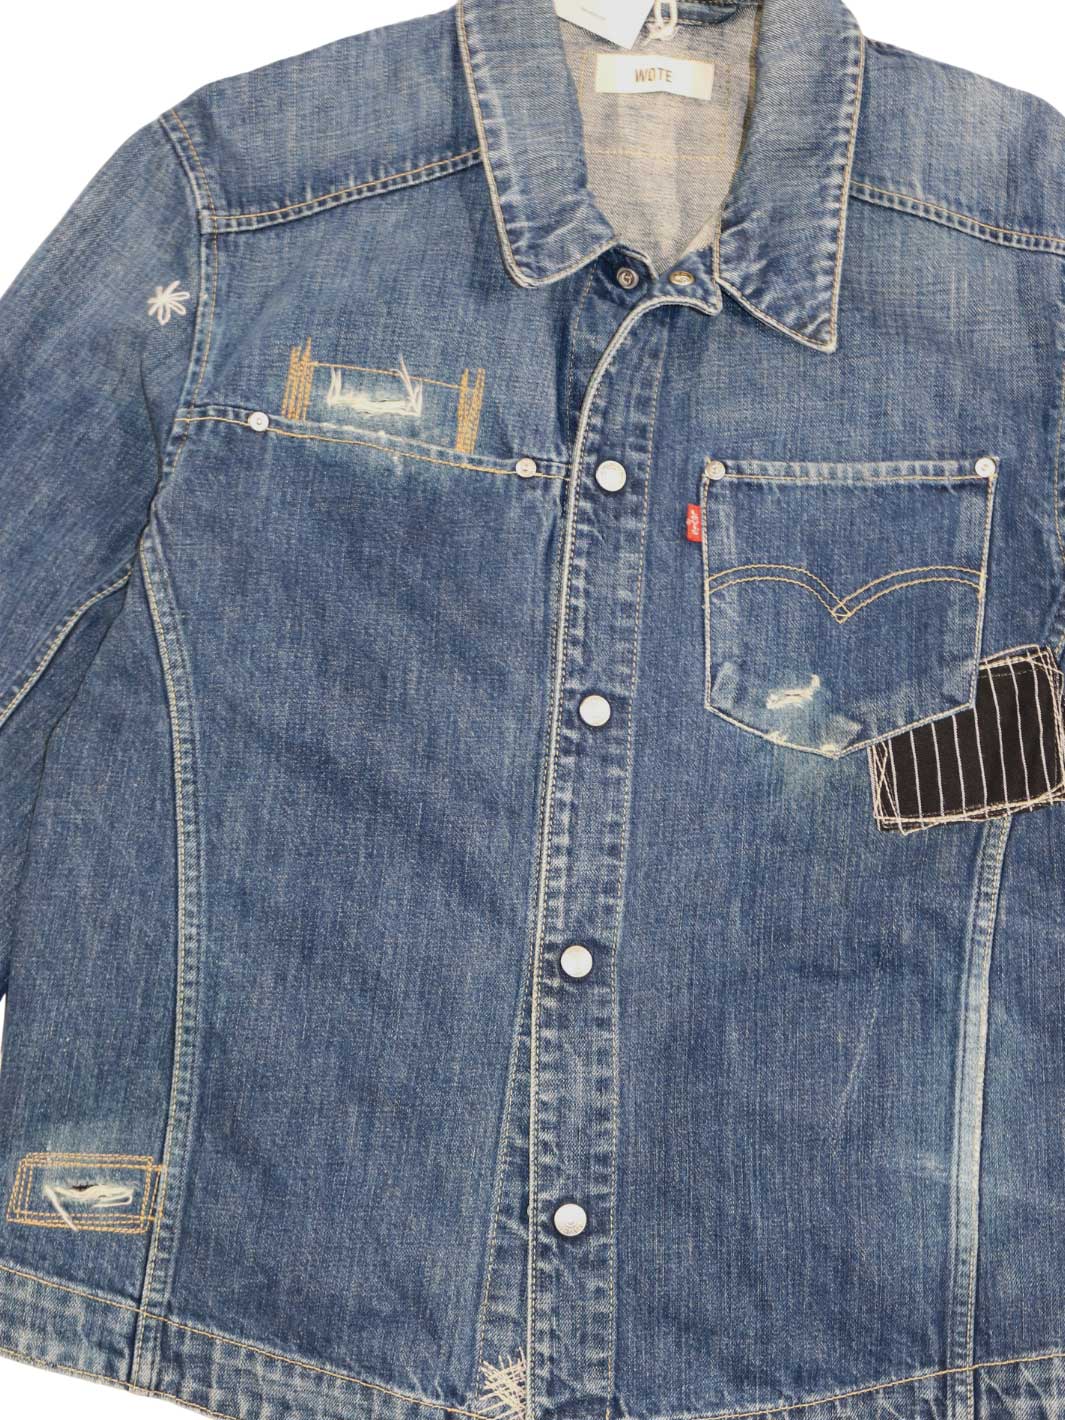 Männer Vintage Jeansjacke Größe XL eine Hemden Brusttasche links rechte Seite mit einer Leistentasche 100% Baumwolle